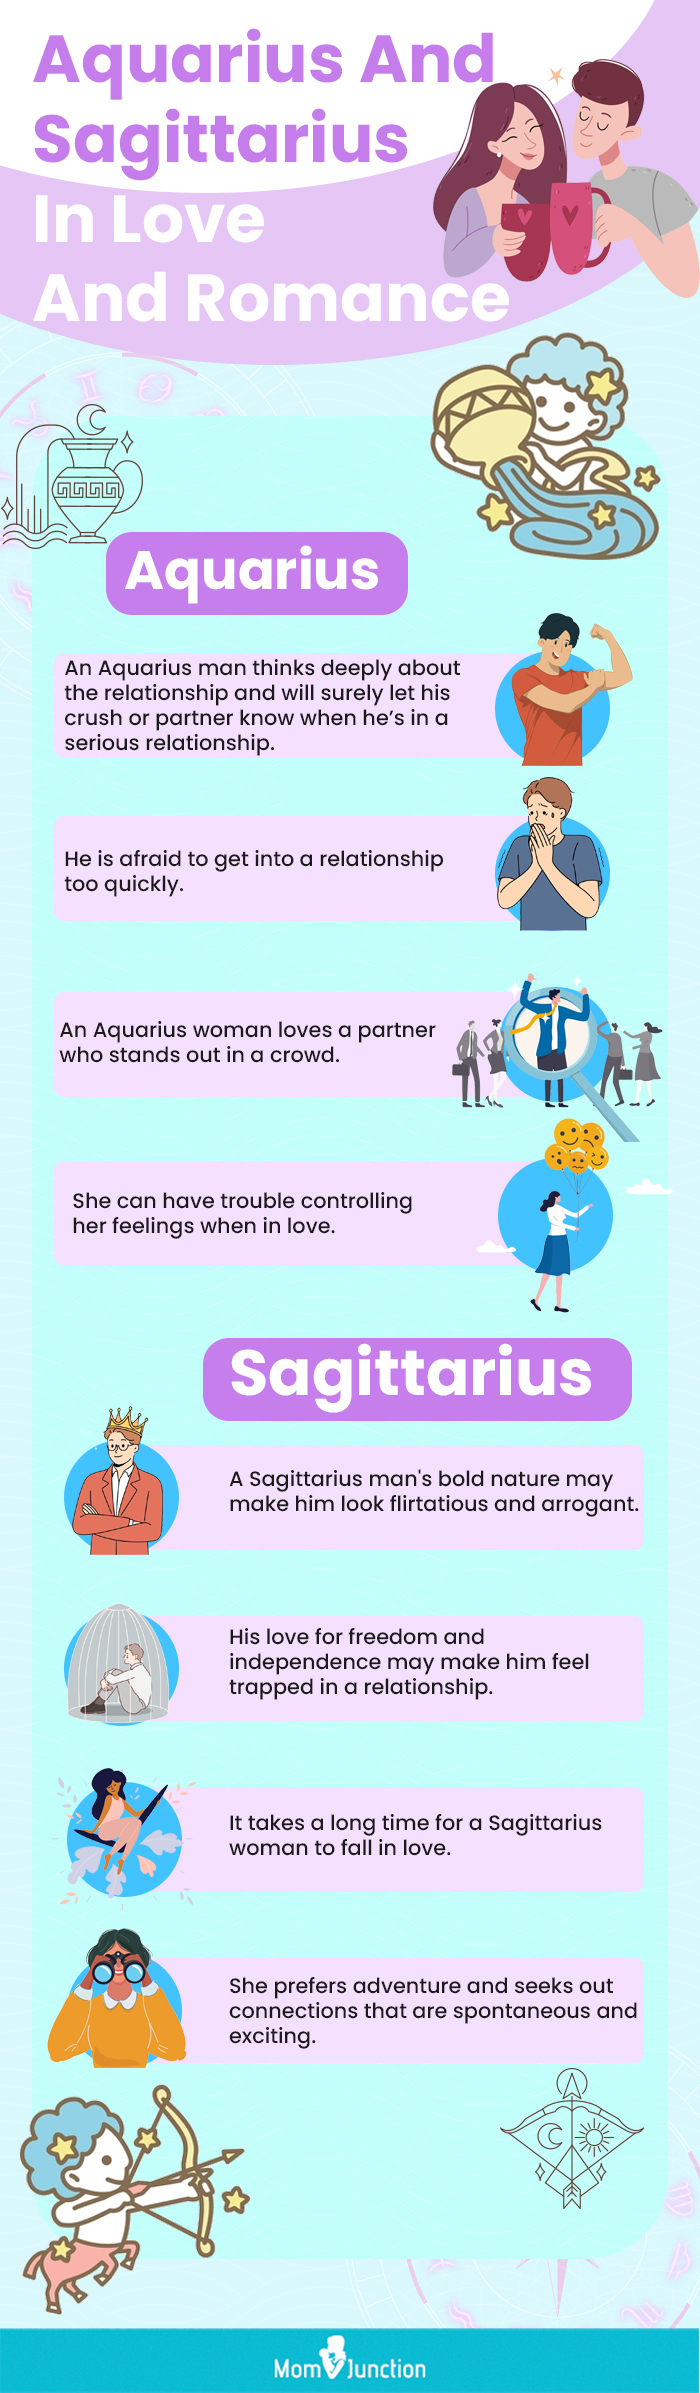 aquarius and sagittarius in love and romance (infographic)